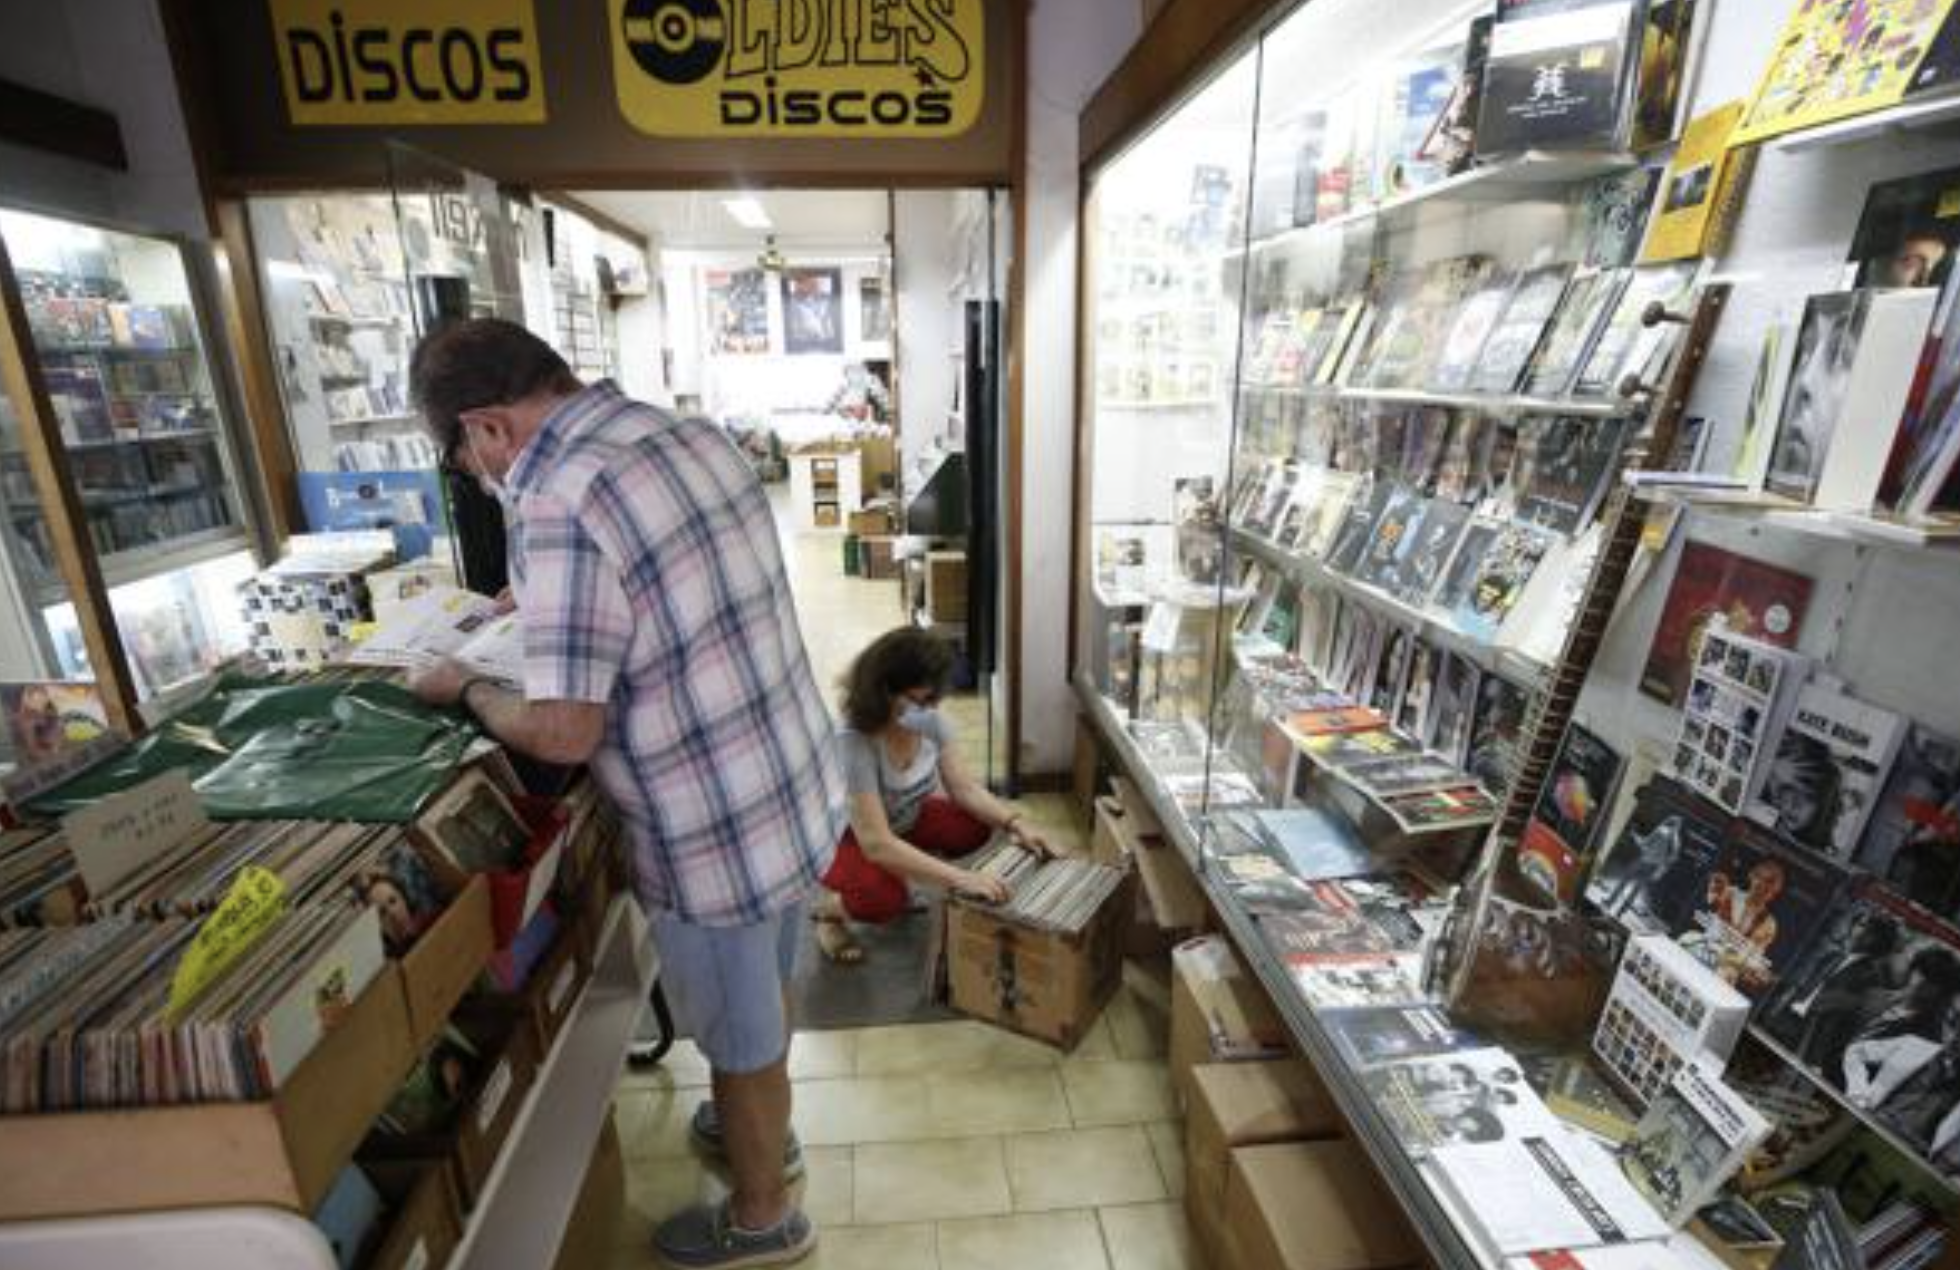 La tienda de discos más antigua de España se traspasa por la jubilación de sus propietarios. Foto: Twitter